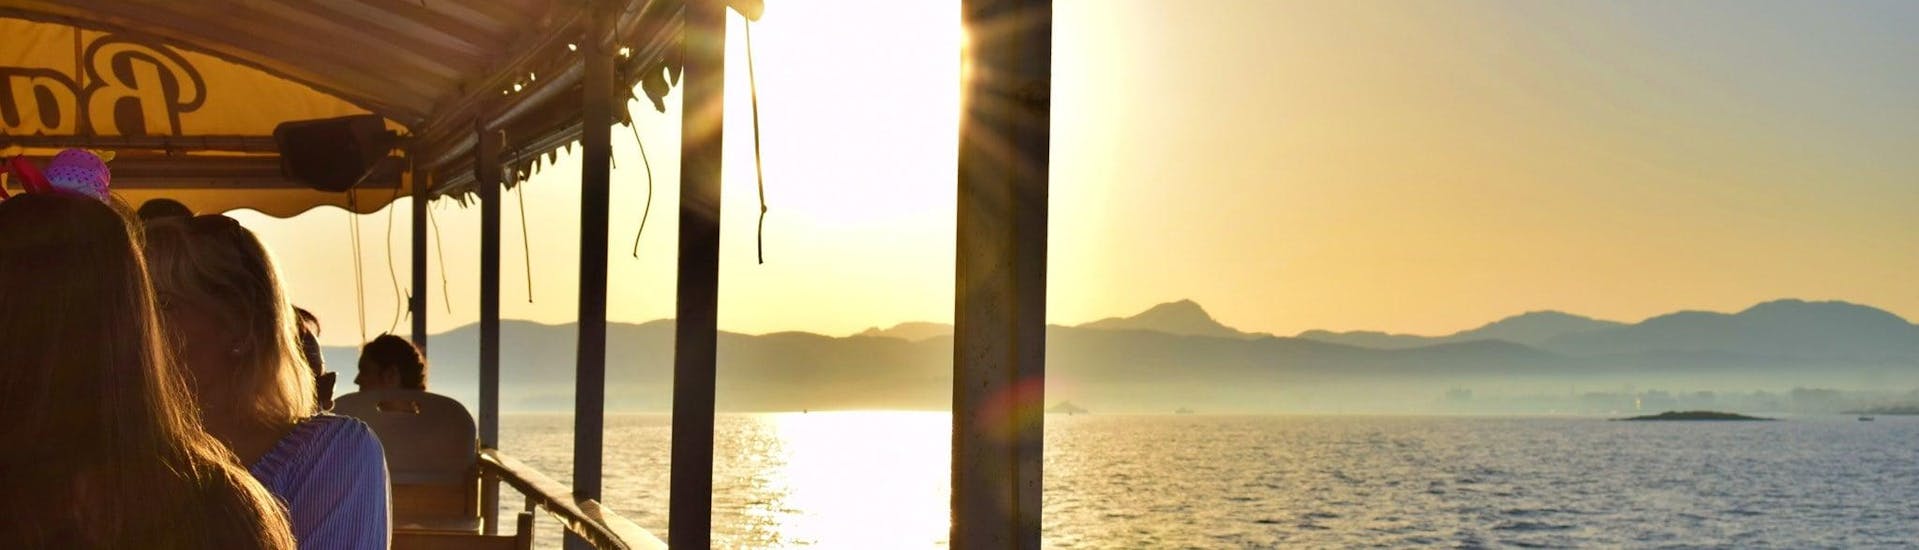 Giro in barca al tramonto intorno a Palma di Maiorca con musica live.